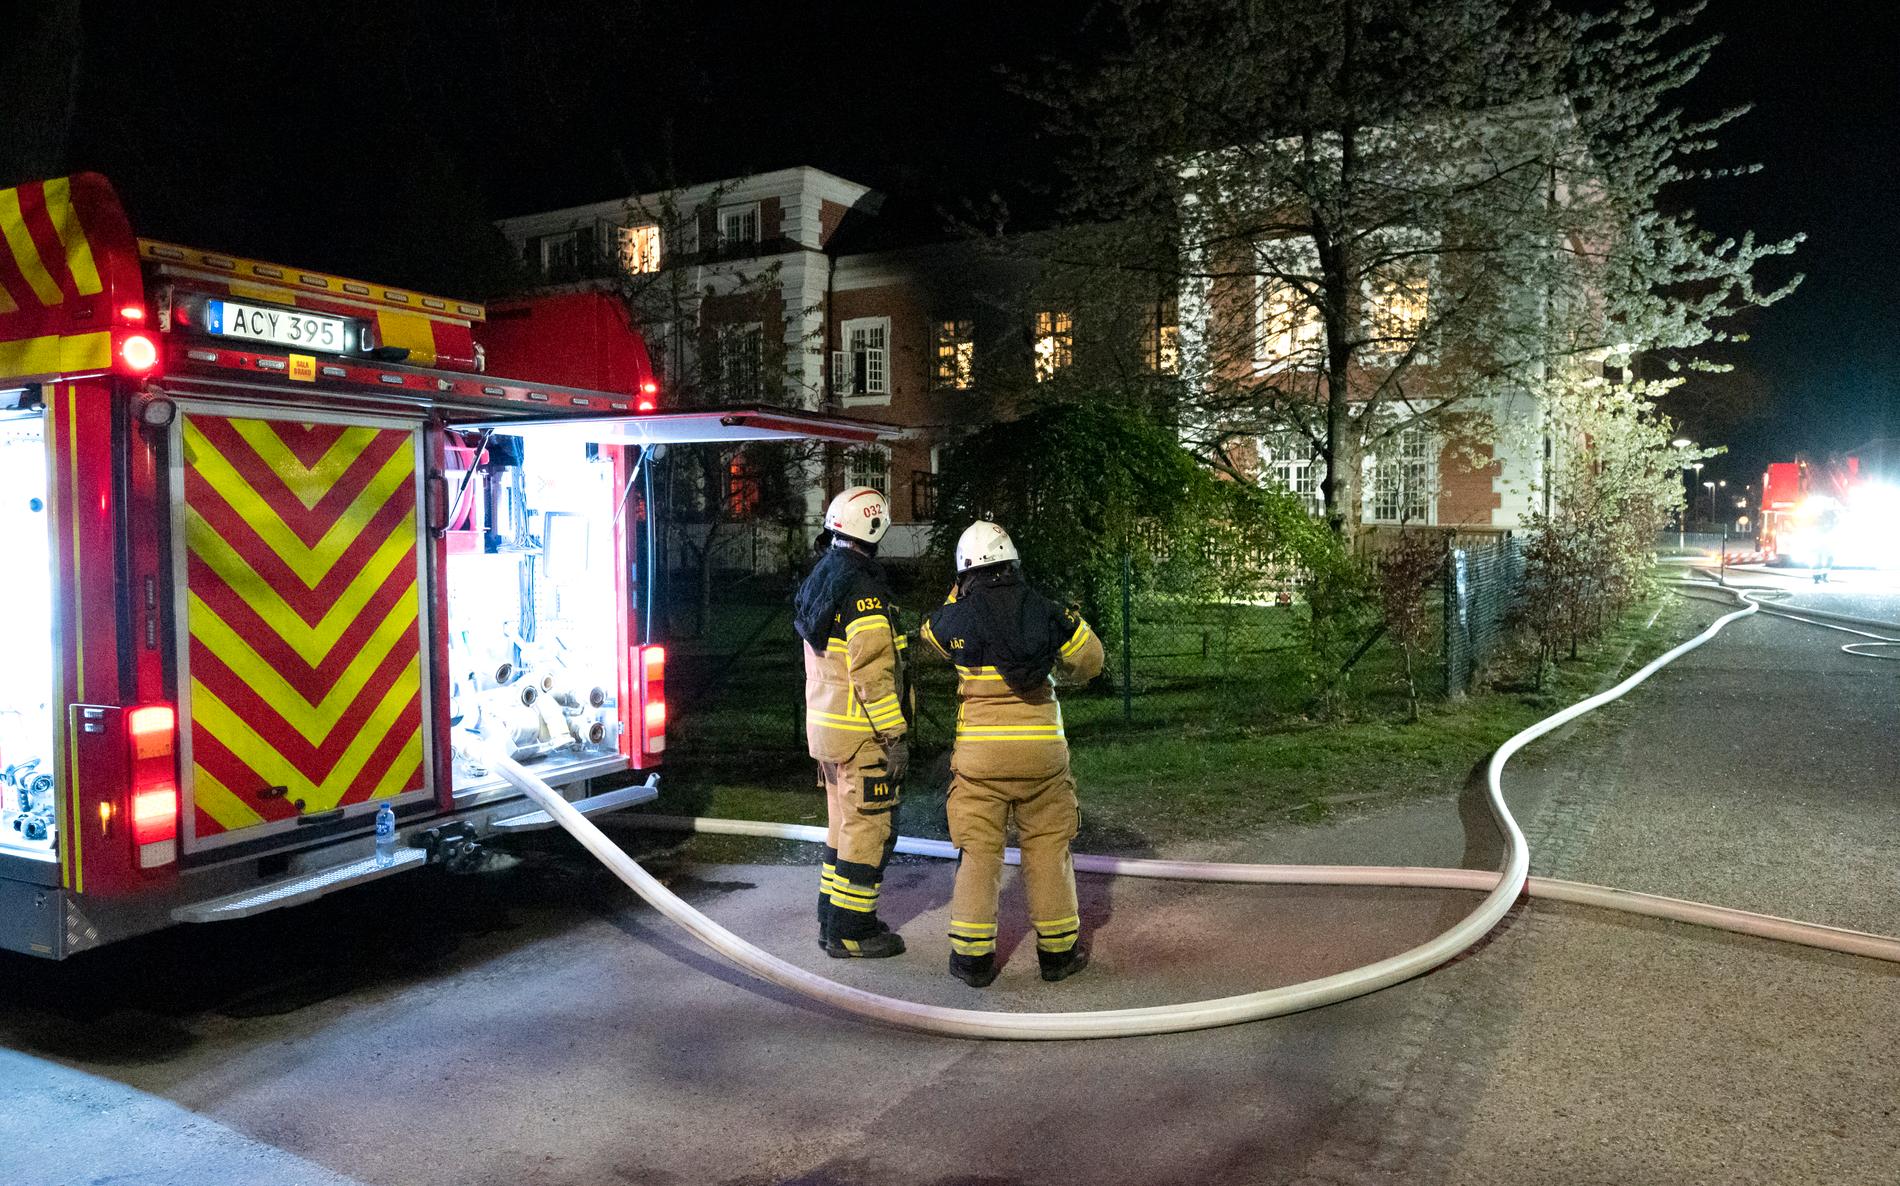 En skola i Lund började brinna under natten. Branden misstänks vara anlagd.